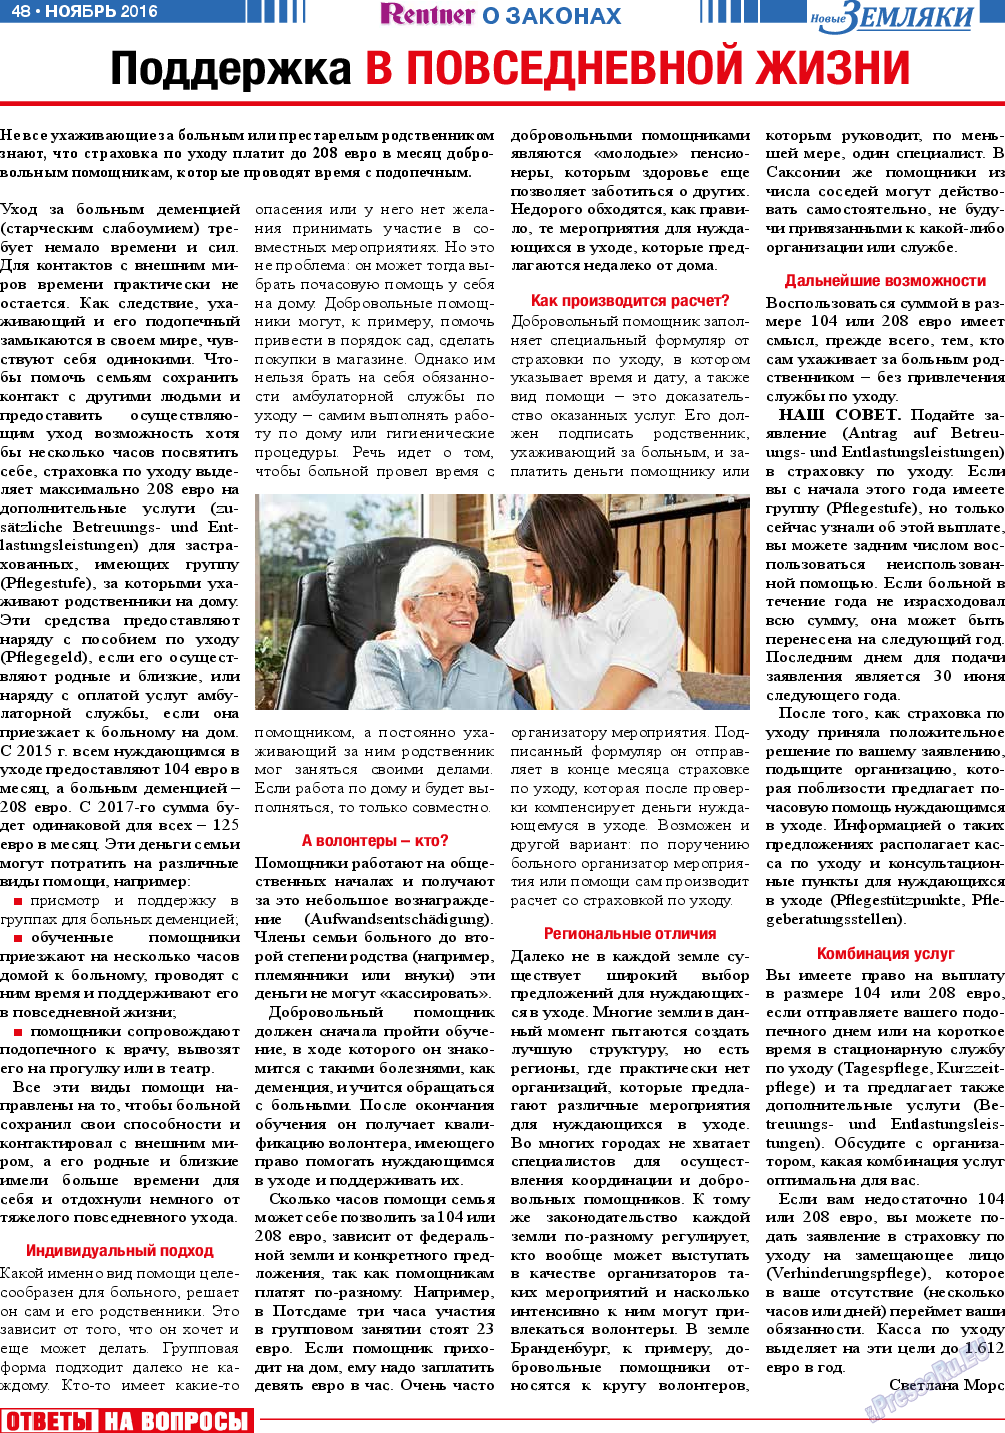 Новые Земляки, газета. 2016 №11 стр.48